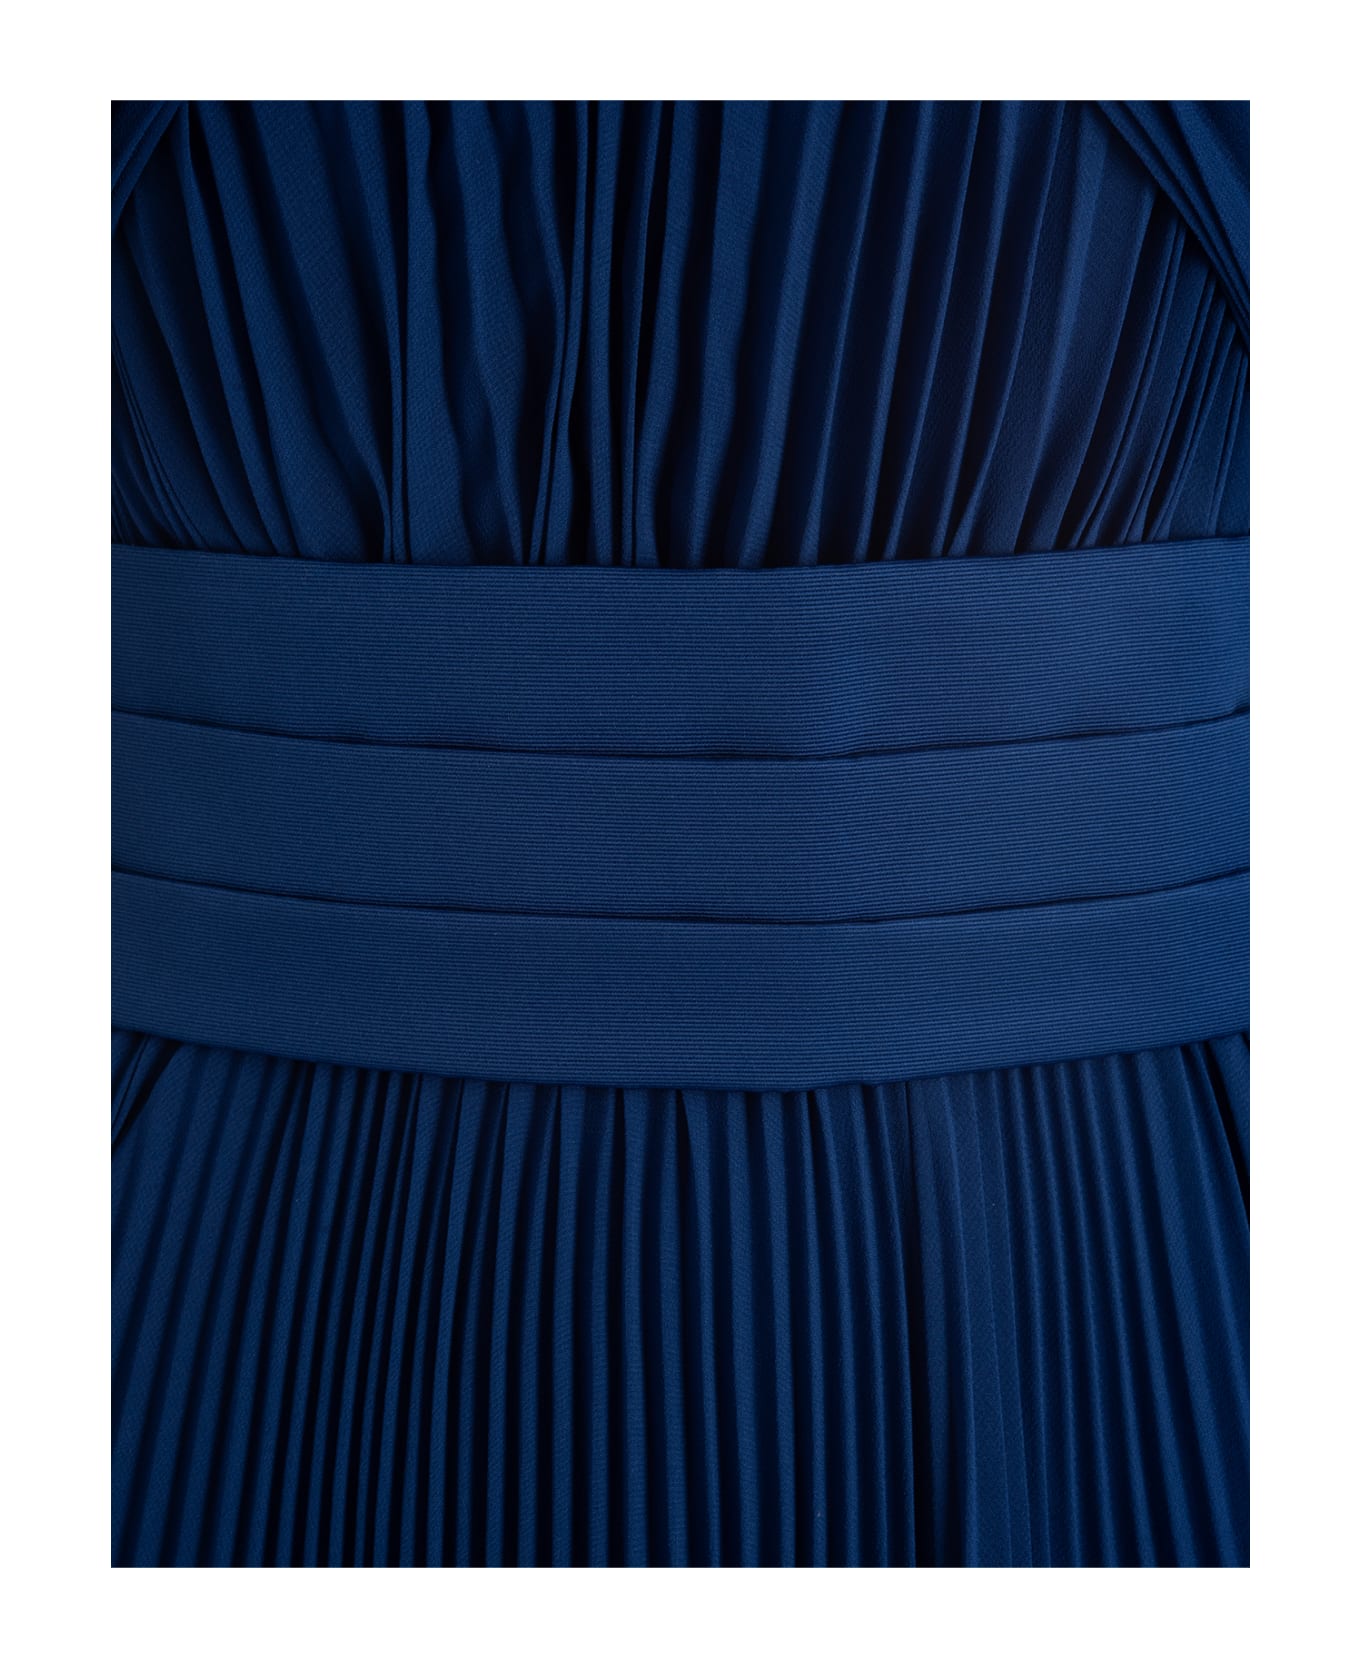 Max Mara Clarino Pleated Midi Dress - Blu